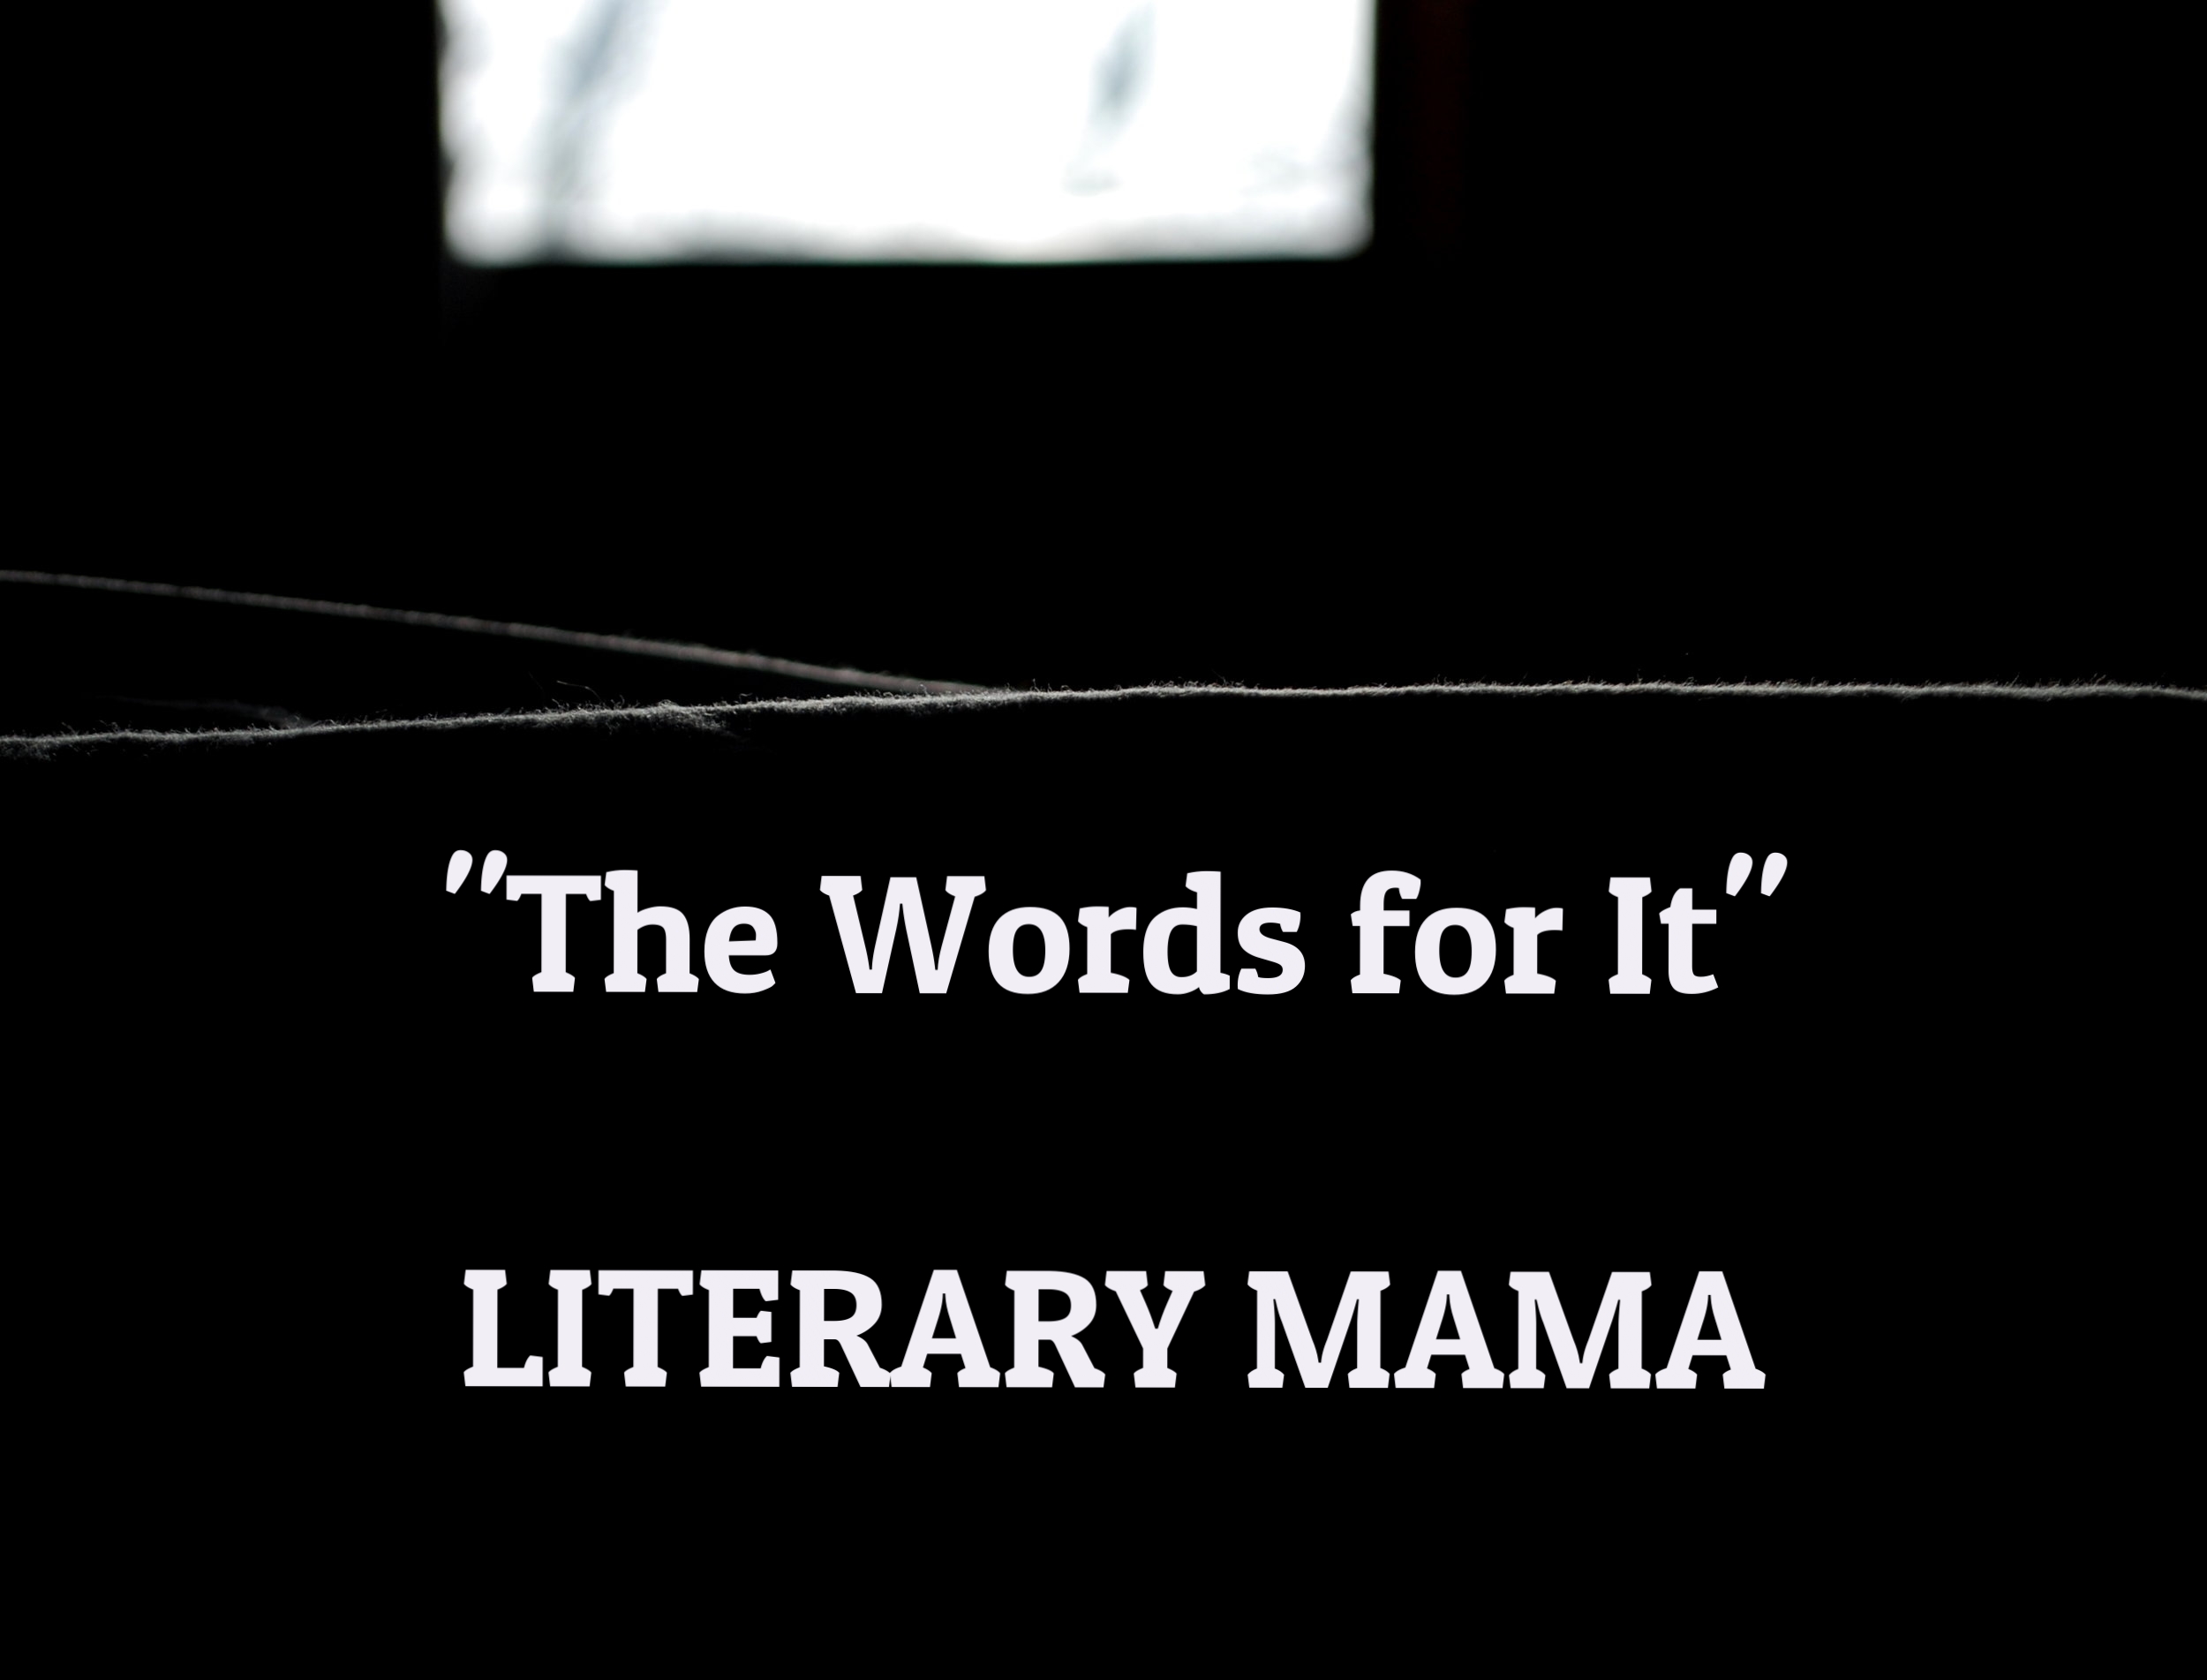 literary mama essay maria mutch